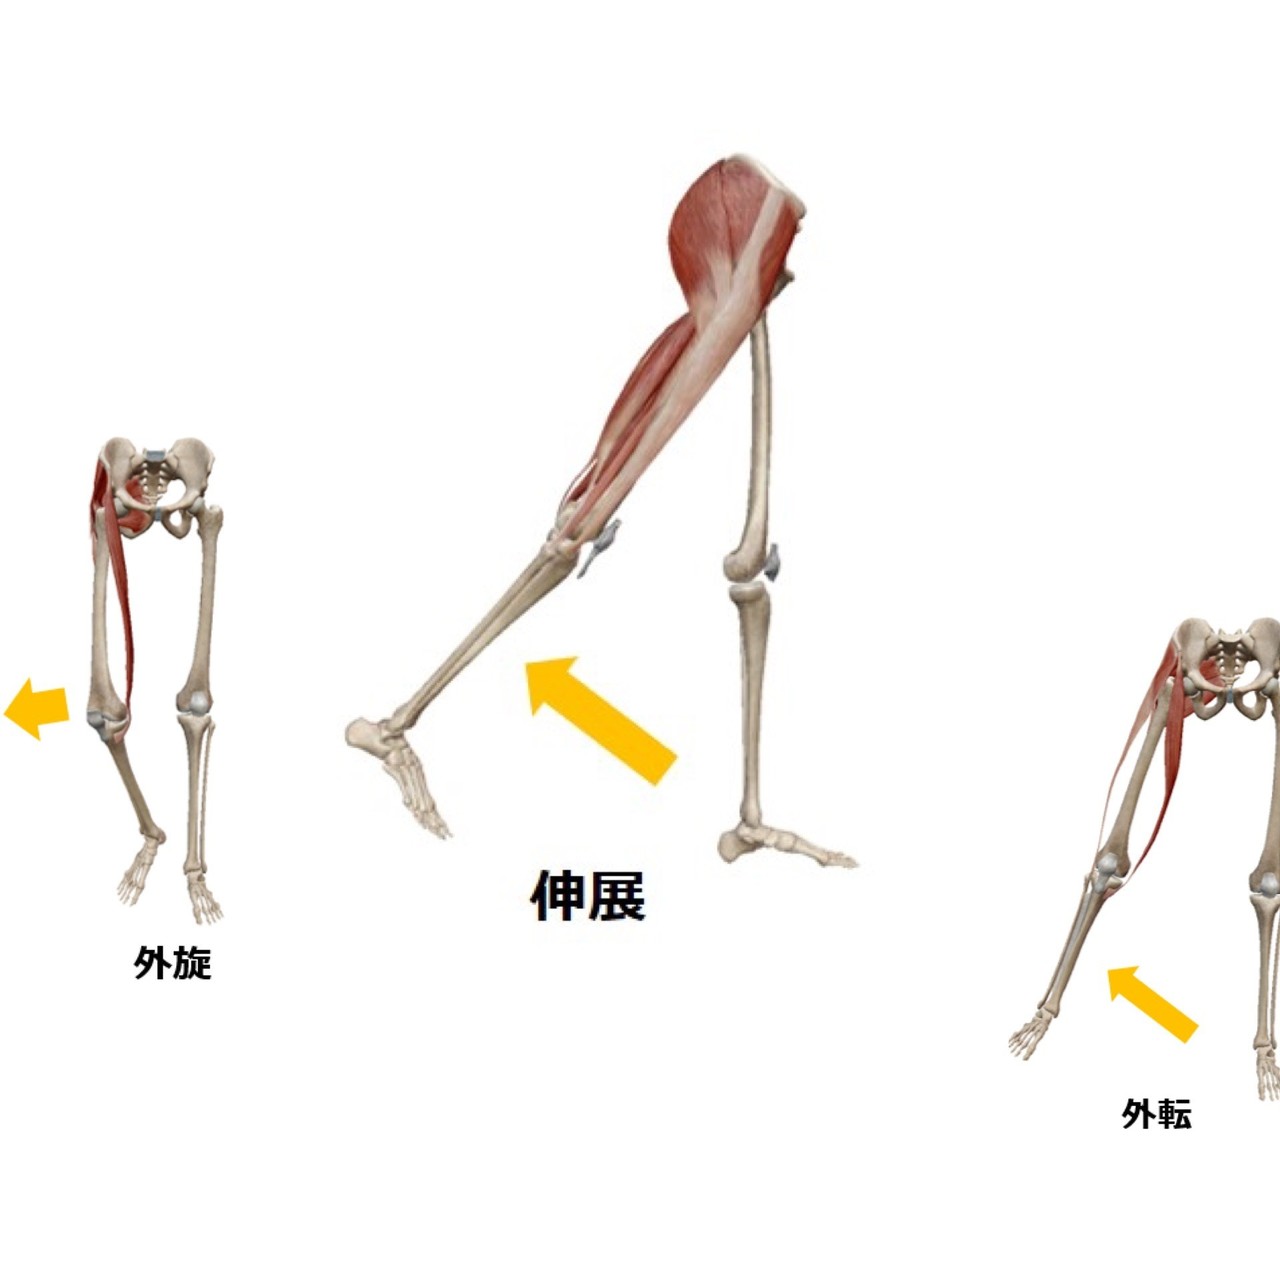 大殿筋の機能不全 と 坐骨神経痛 の関連 10 6更新 Masato Note